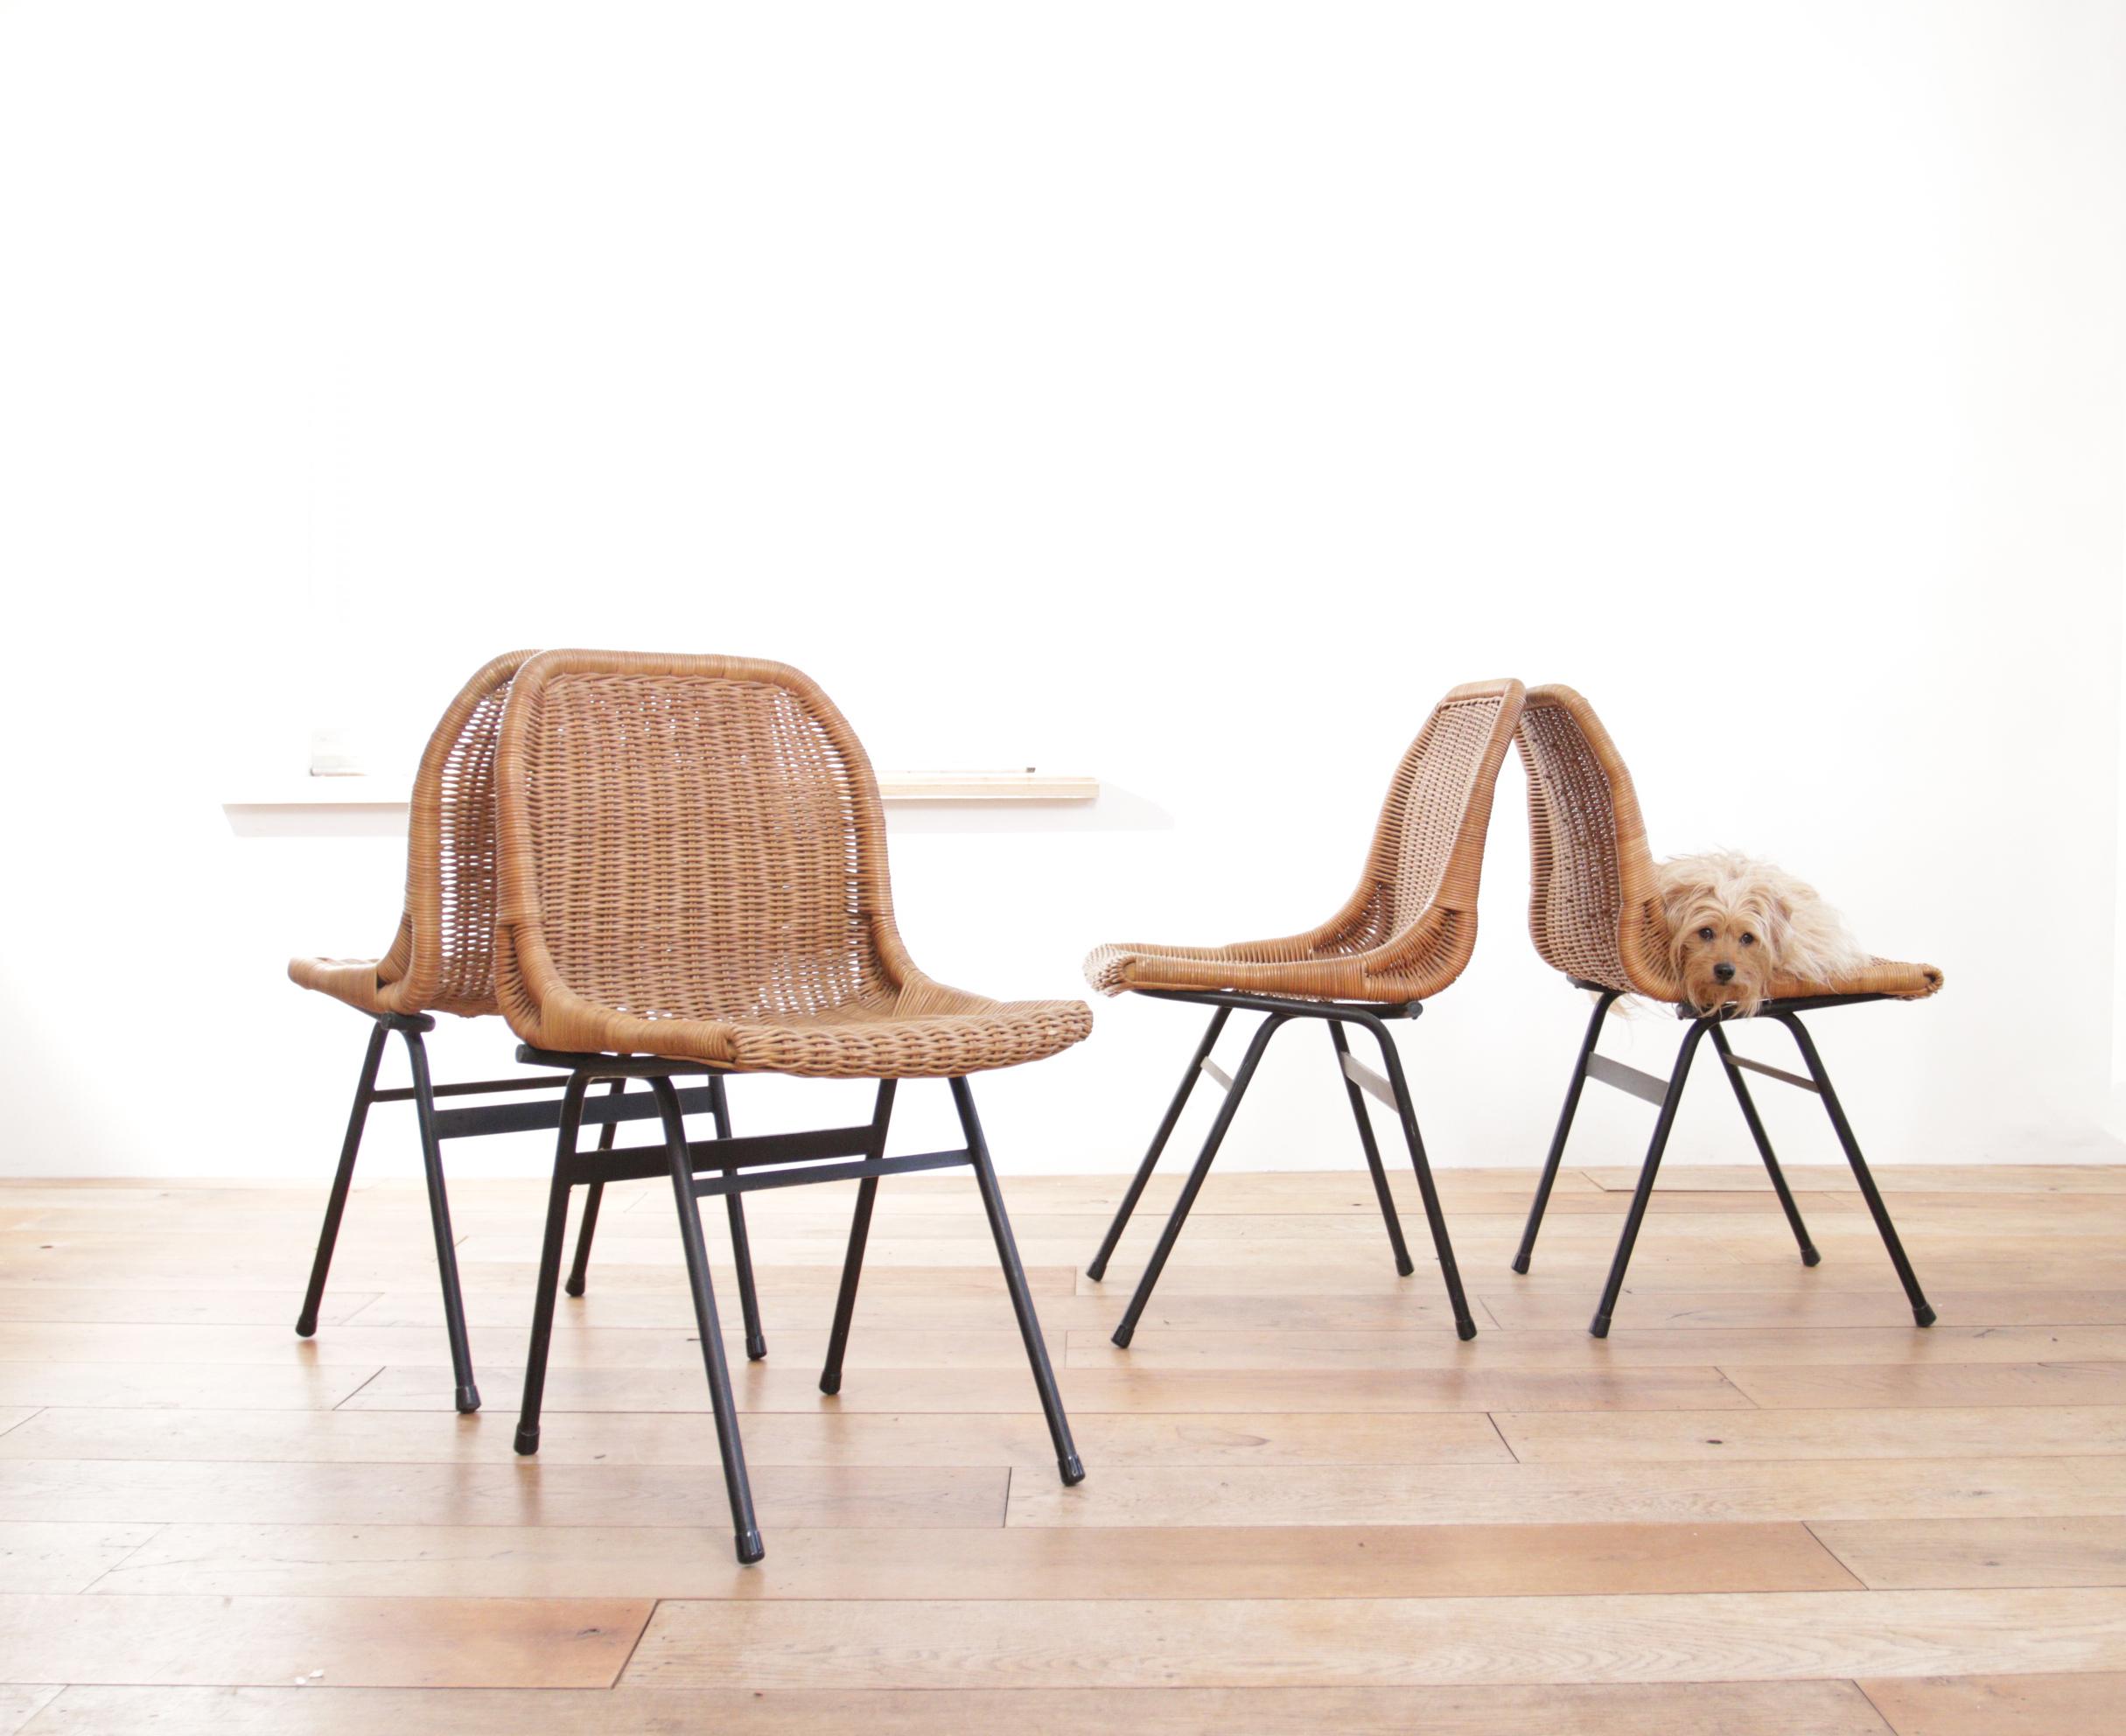 4 Belles chaises avec une assise en rotin et une base en métal revêtu de noir.

(1920-2010) Dirk van Sliedregt, important designer de meubles, architecte d'intérieur, enseignant.

S'accordent parfaitement avec les designs de, entre autres :